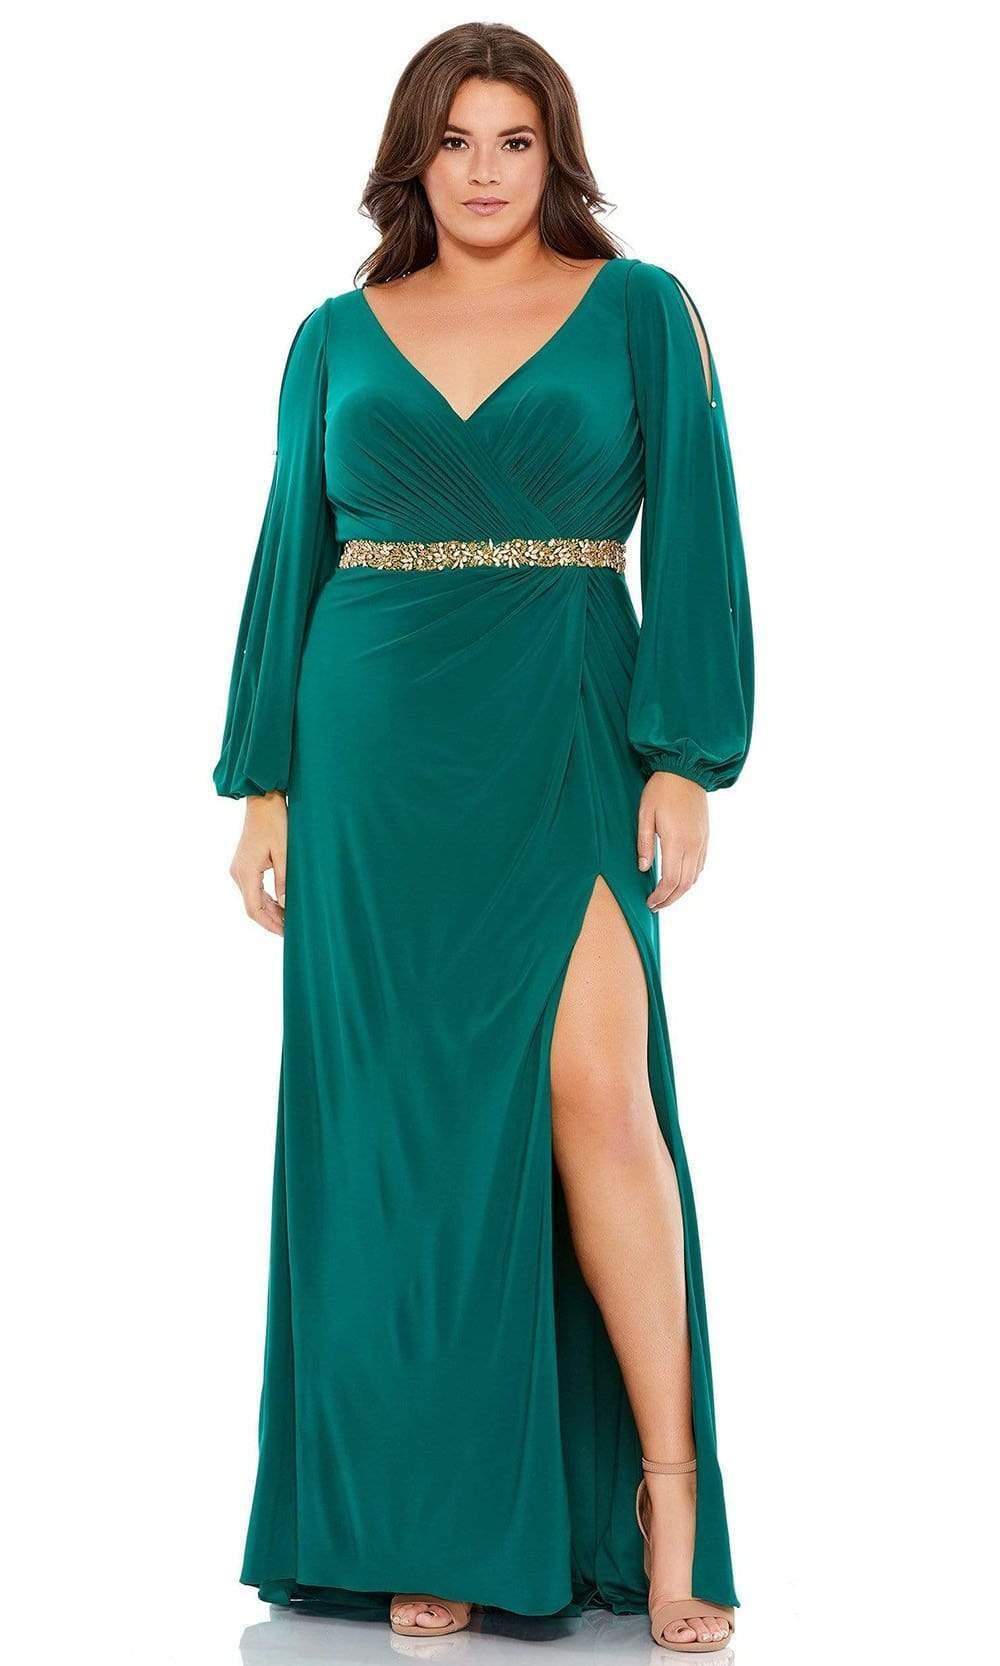 Mac Duggal 67747 - V-Neck Beaded Belt Evening Dress Evening Dresses 12W / Emerald Green